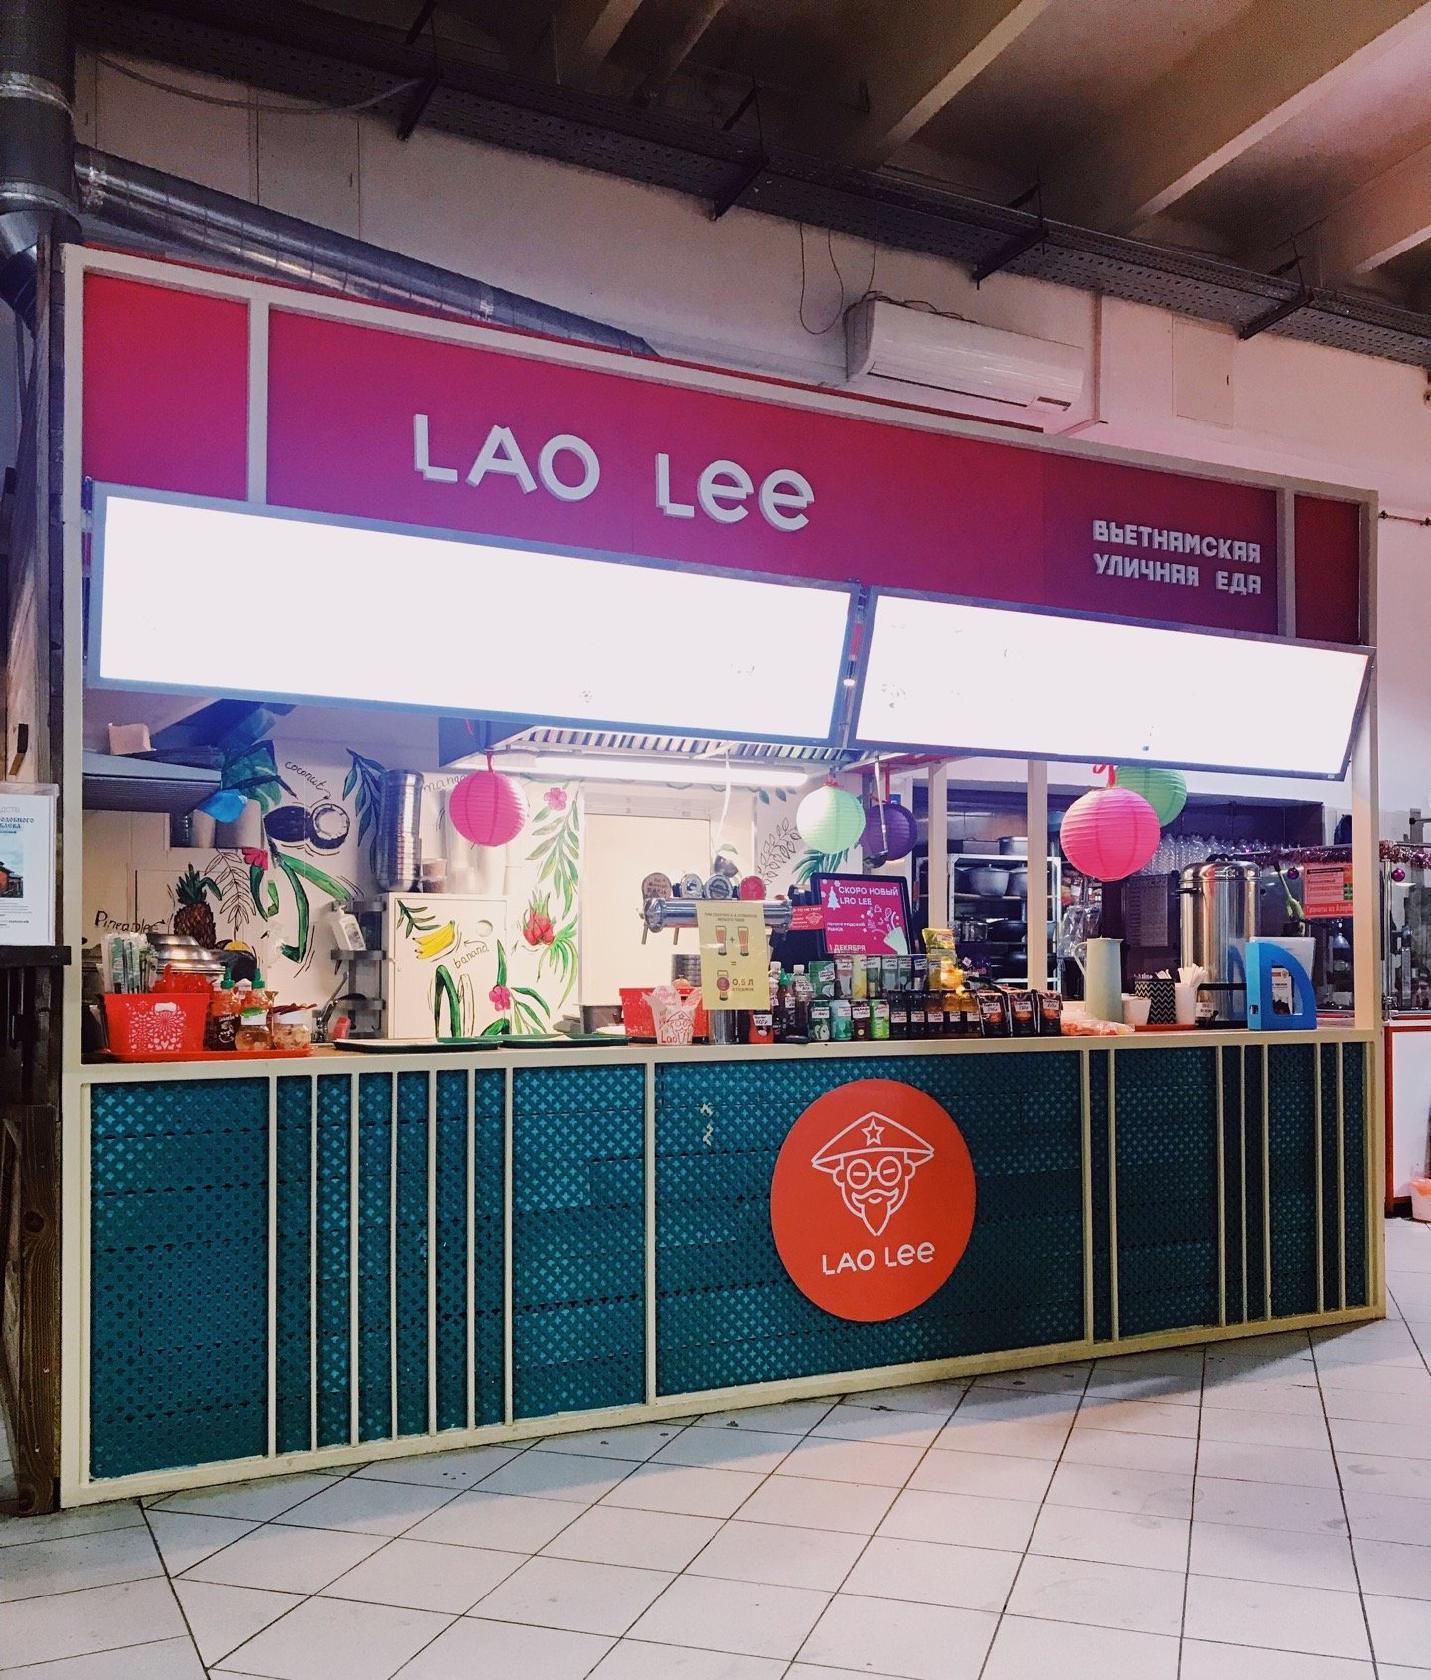 Lao Lee